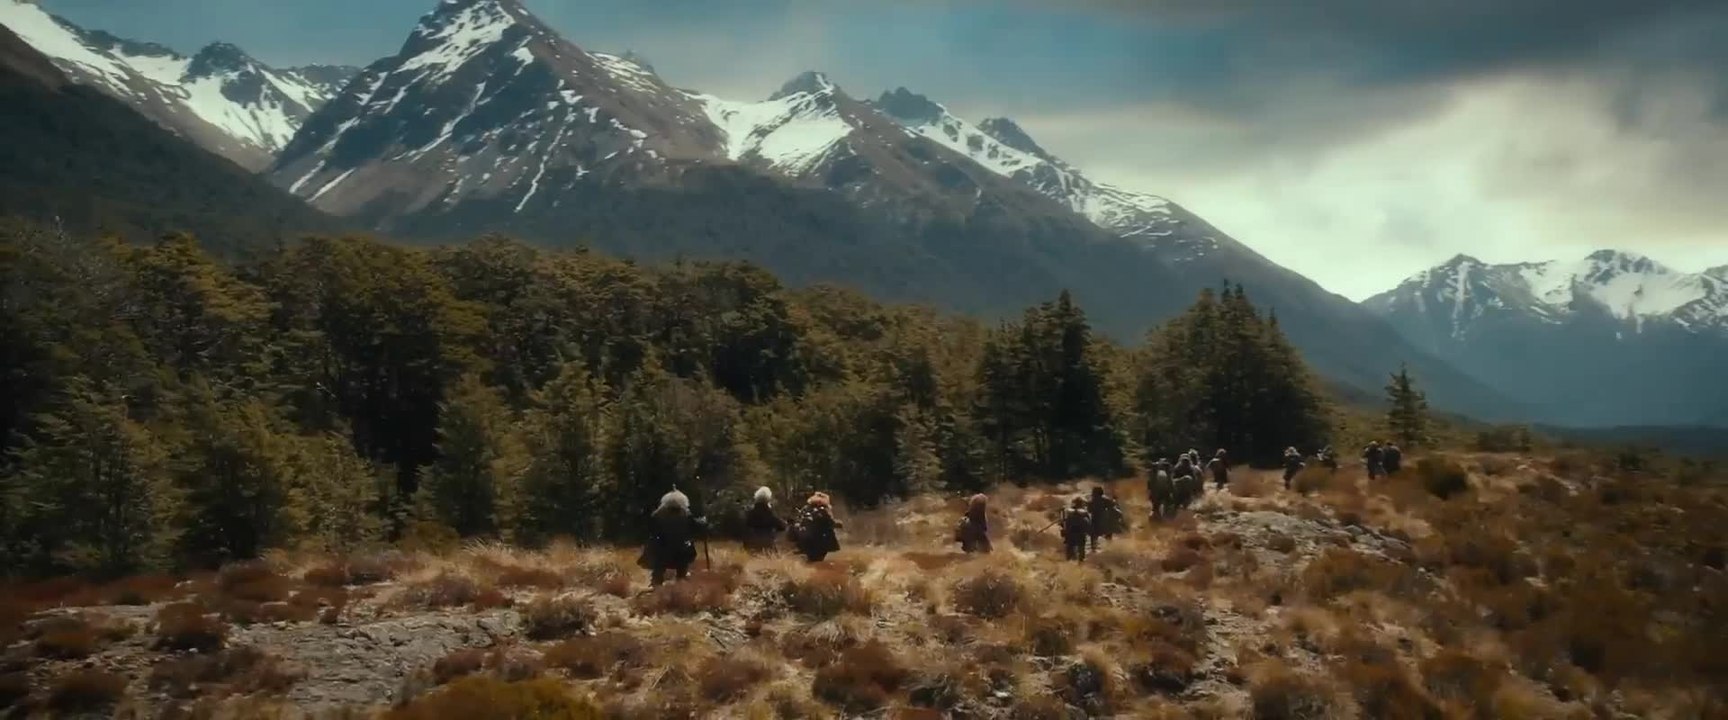 Der Hobbit: Eine unerwartete Reise - Trailer 2 (Deutsch) HD